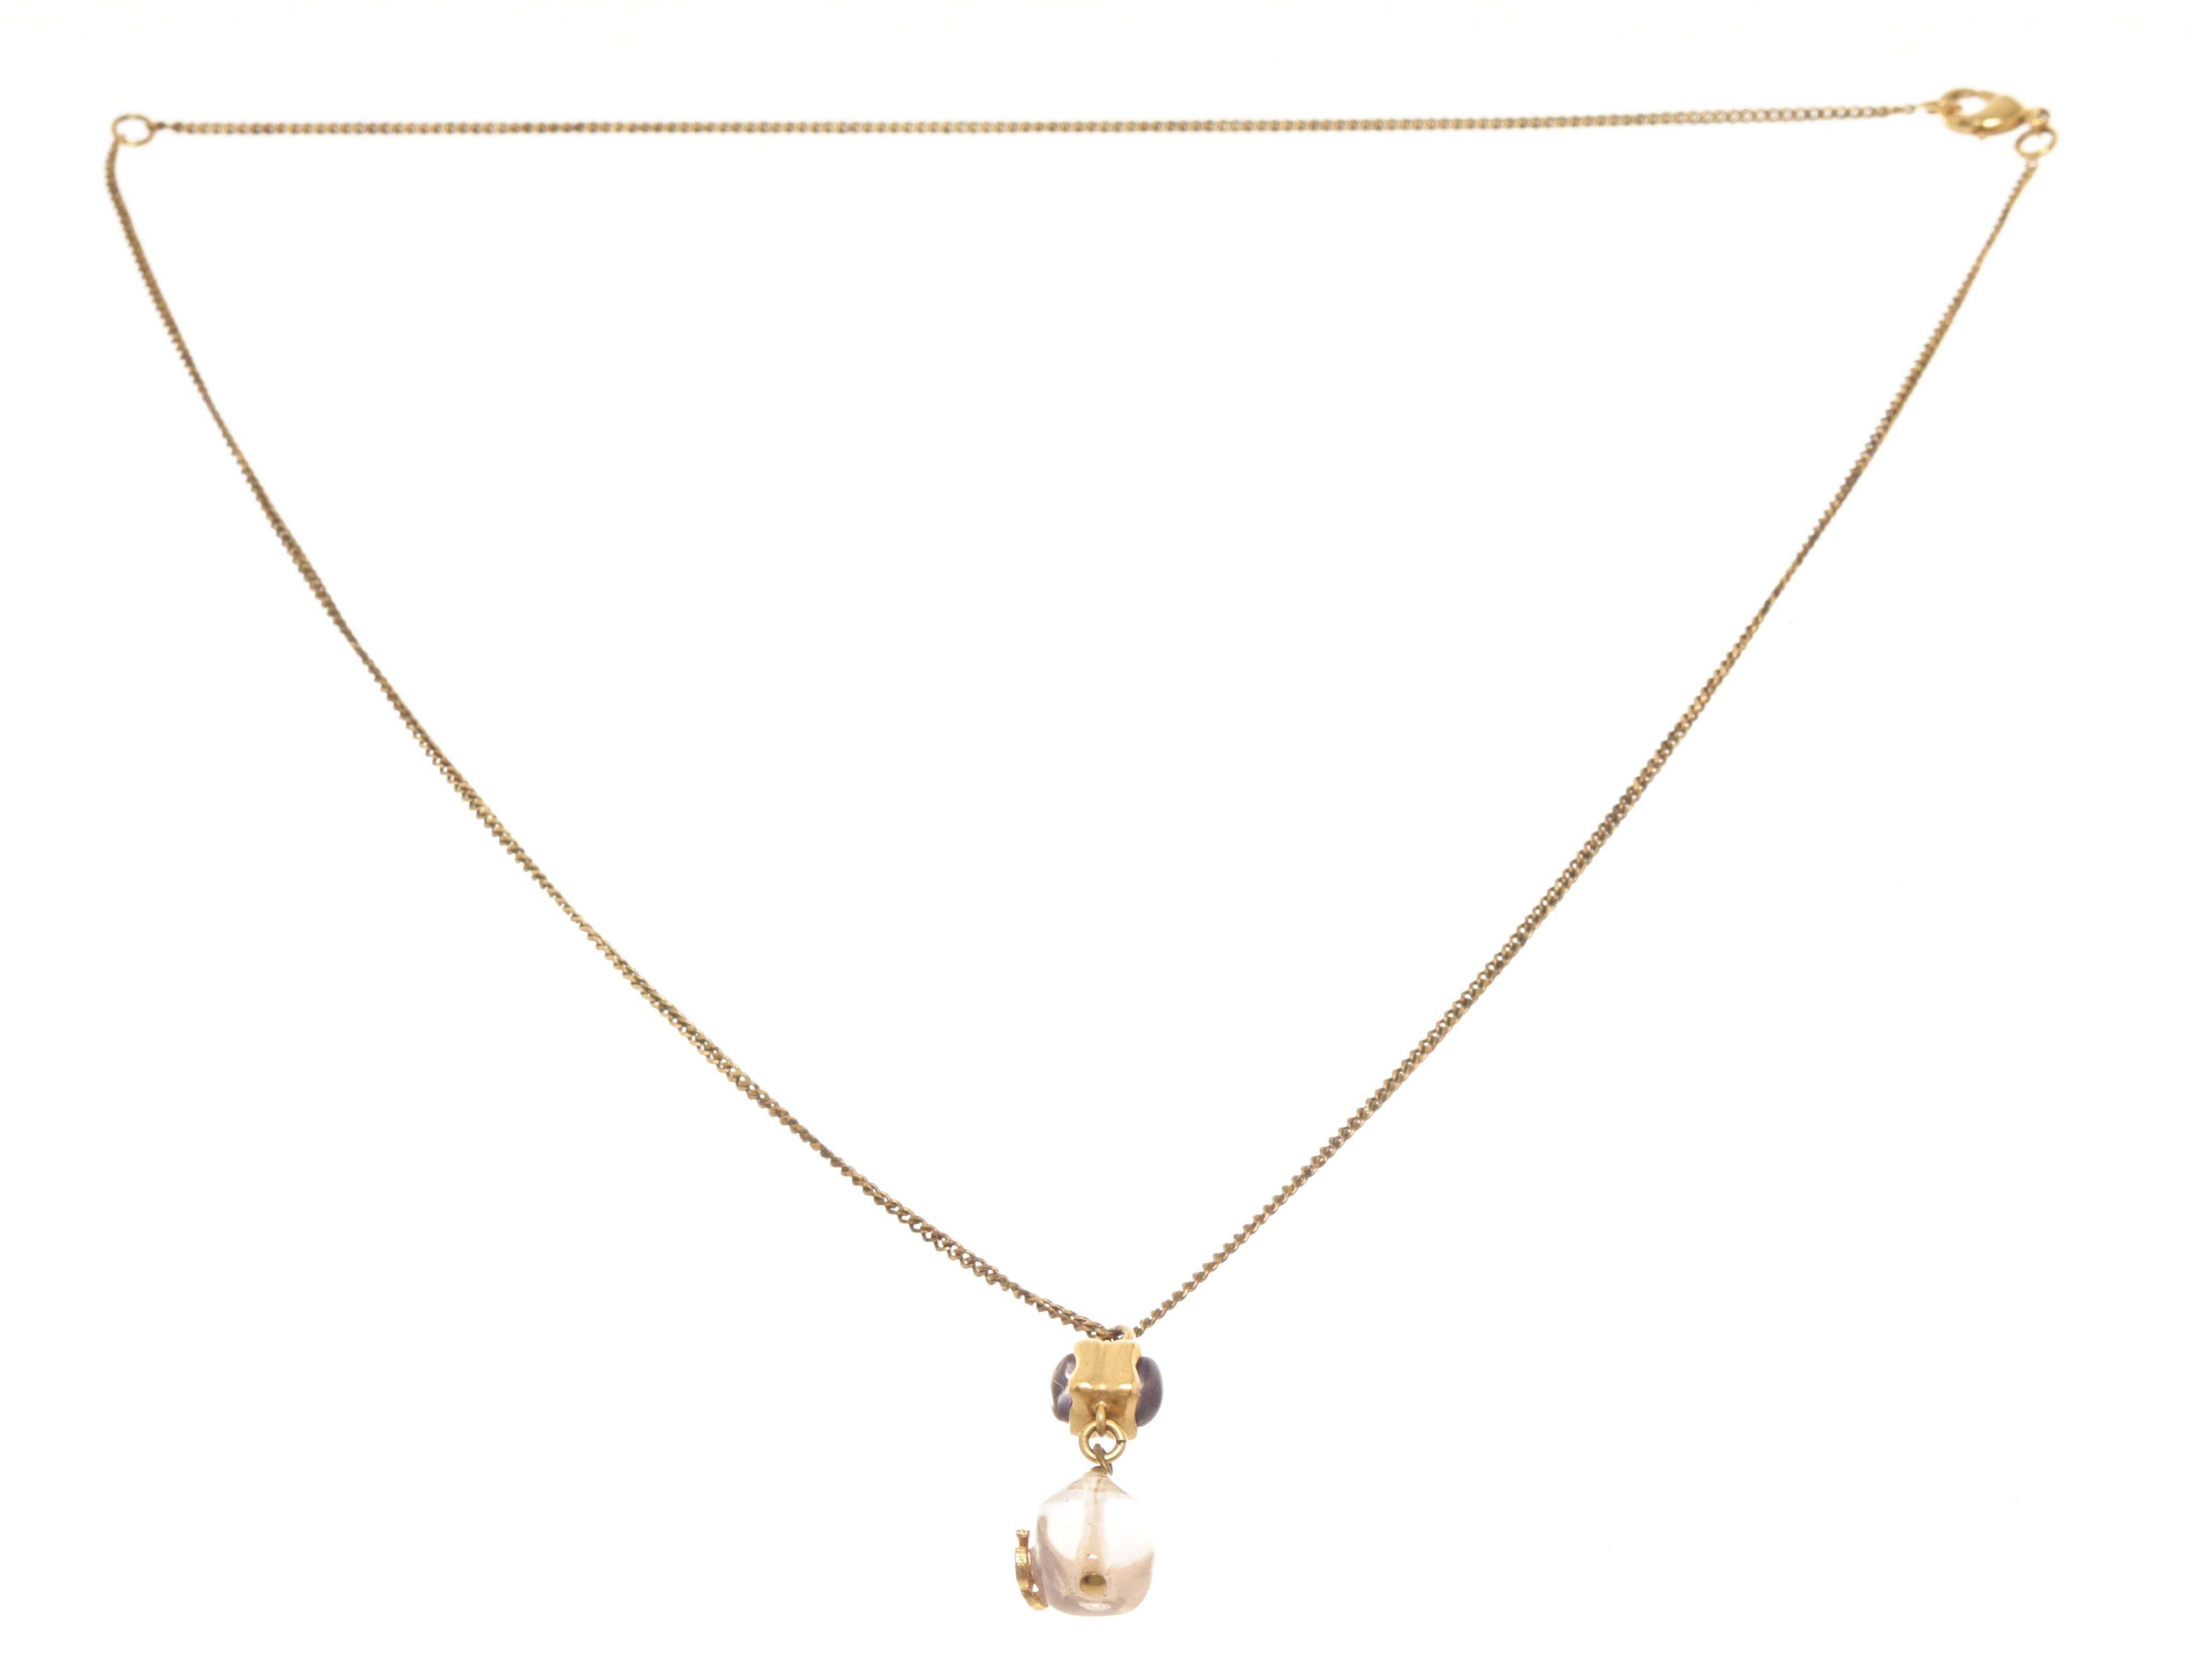 Sautoir Chanel en or avec chaîne en or, fermeture en griffe de homard, et un pendentif en or rose transparent avec le logo CC. 


770036MSC